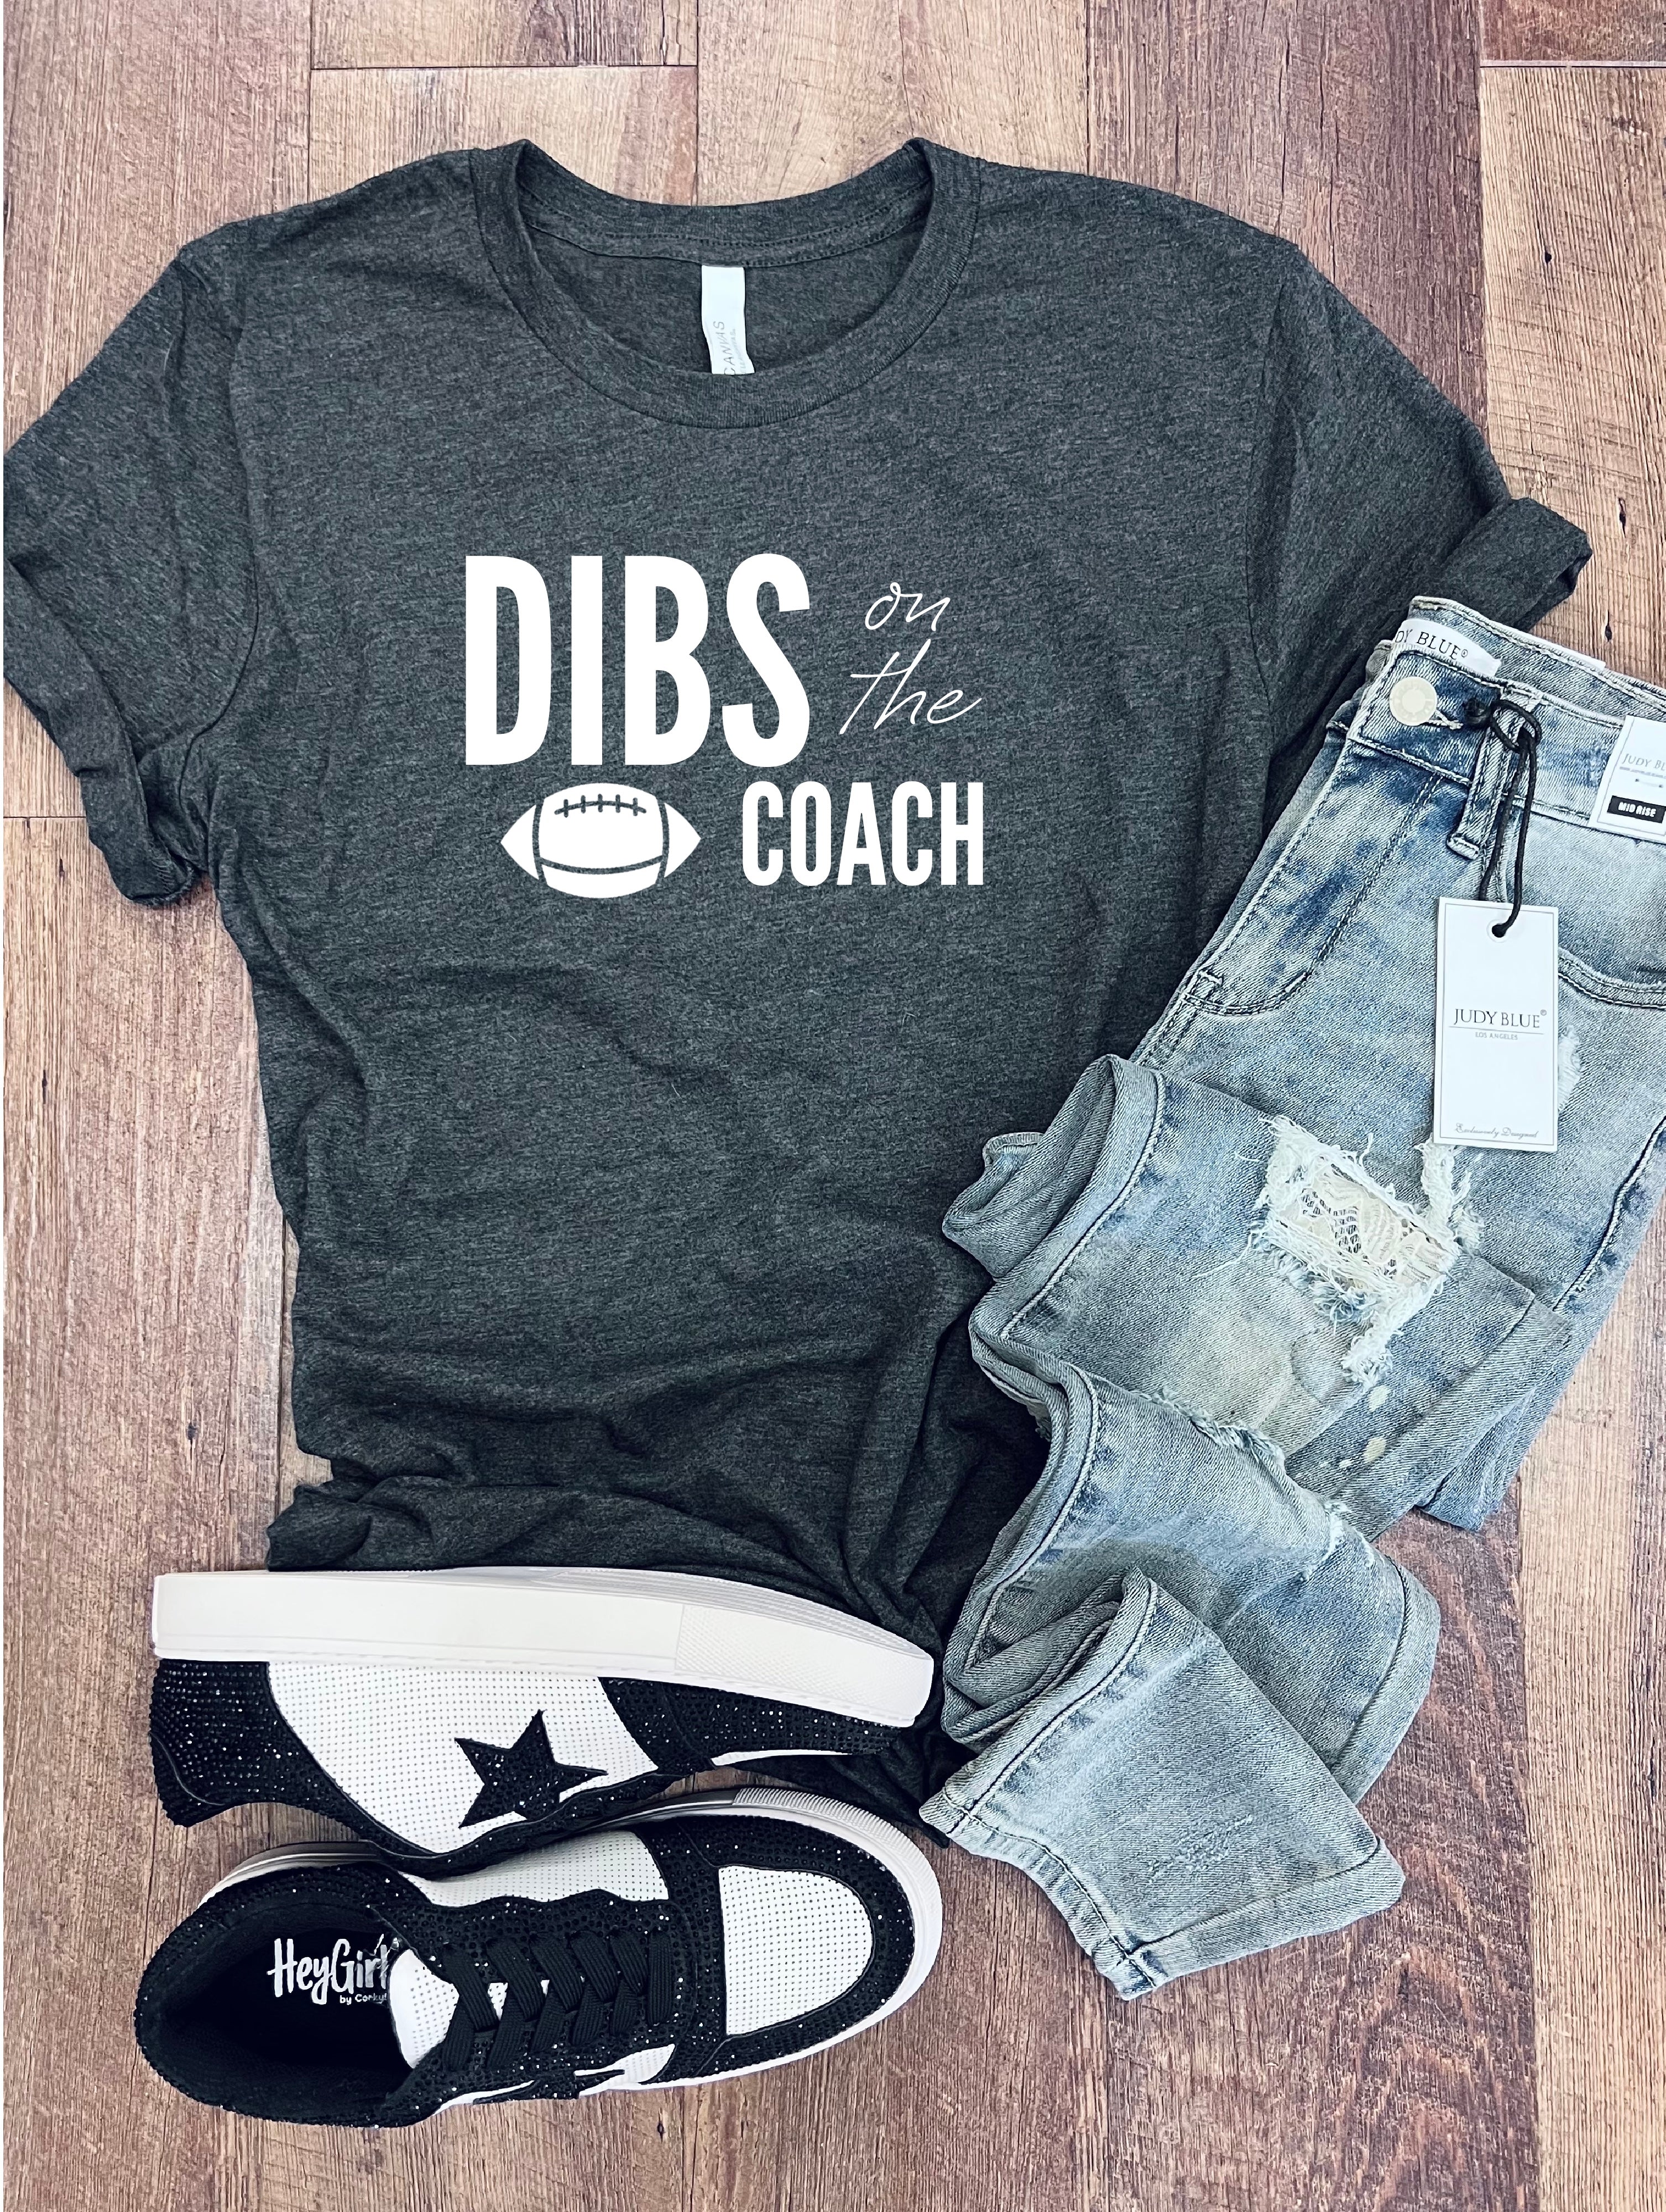 Dibs on the Coach Tee, Football